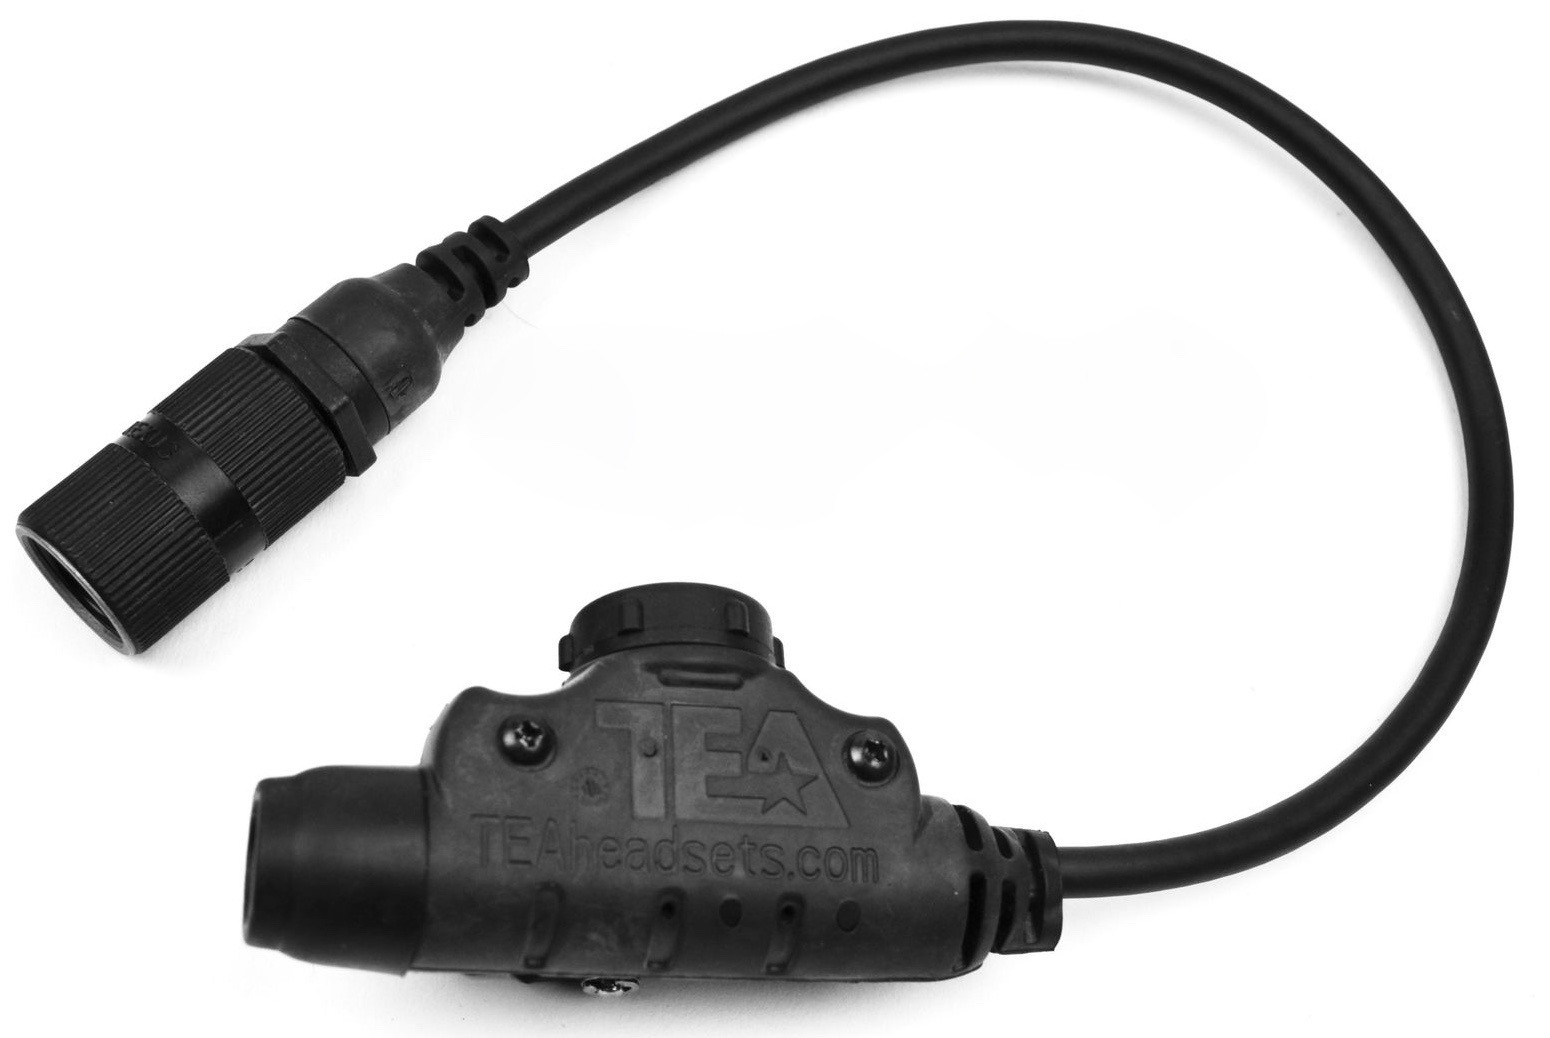 TEA U94 Tactical PTT Headsets 6 Pin PRC 148 152